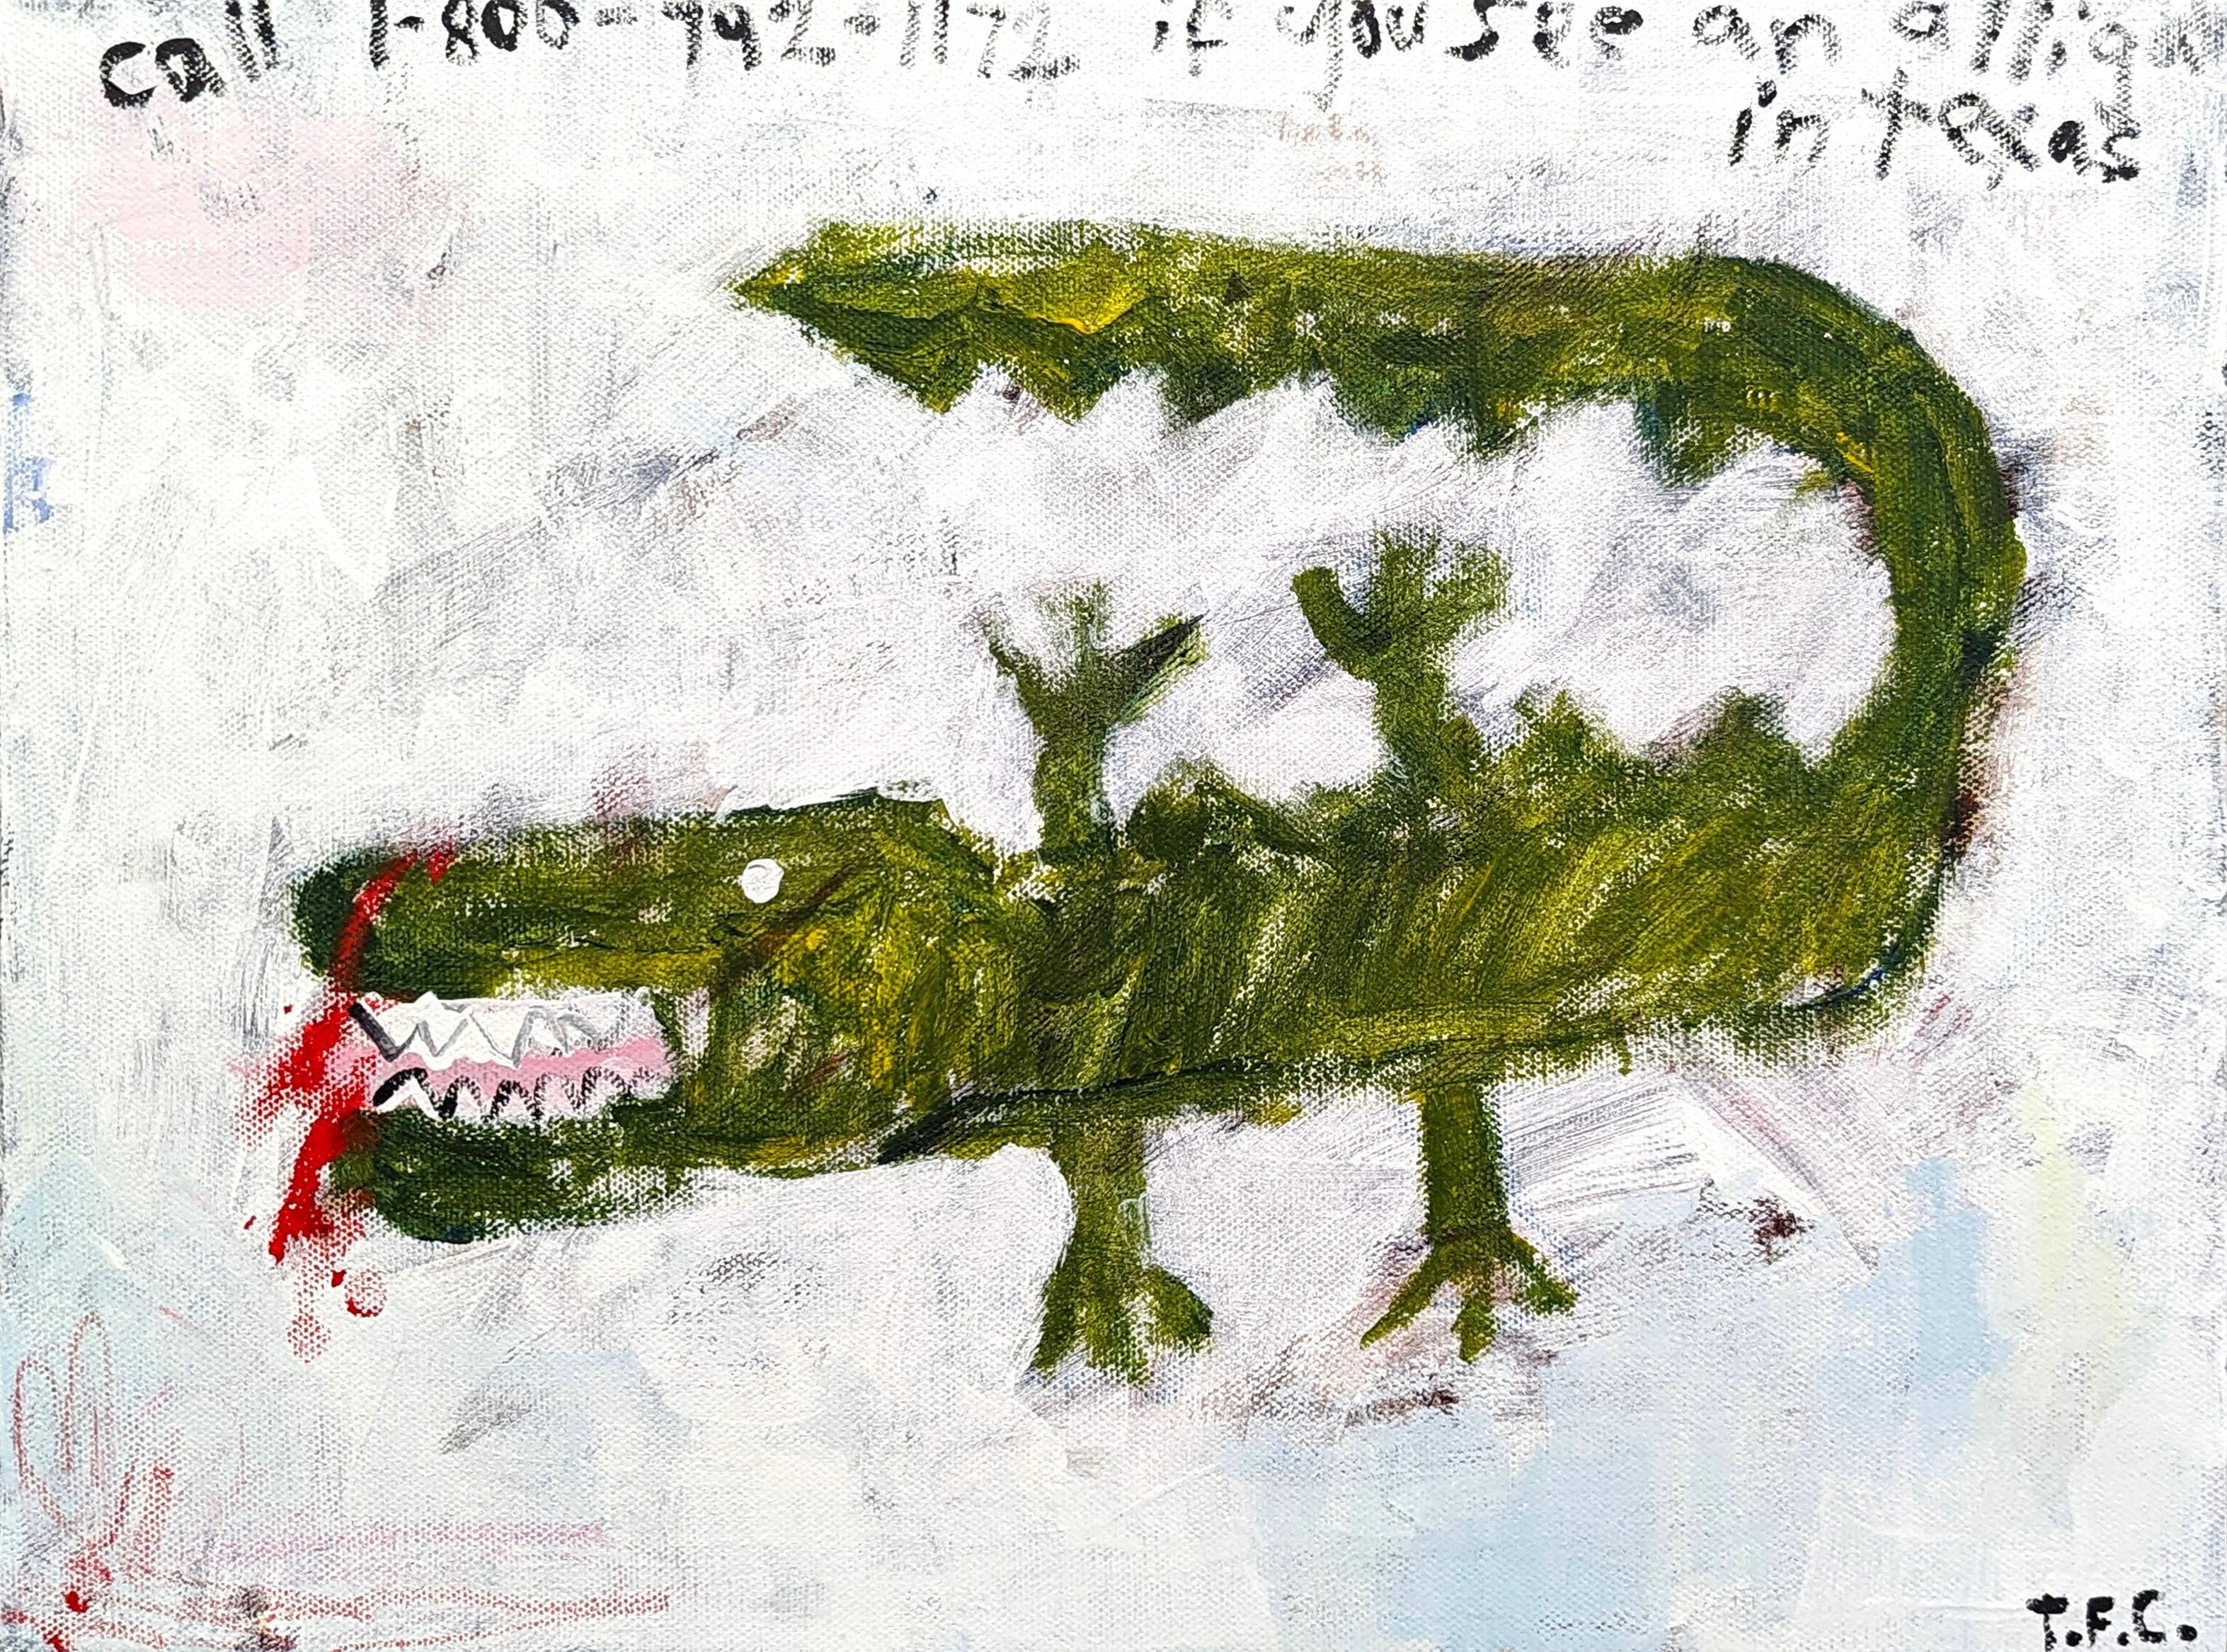 Abstrakte Tiermalerei des zeitgenössischen Künstlers Tyler Casey. Das Werk zeigt eine gestische Darstellung eines Alligators, über der der Satz "Call if you see an alligator in Texas" steht. Signiert in der rechten unteren Ecke der Vorderseite.